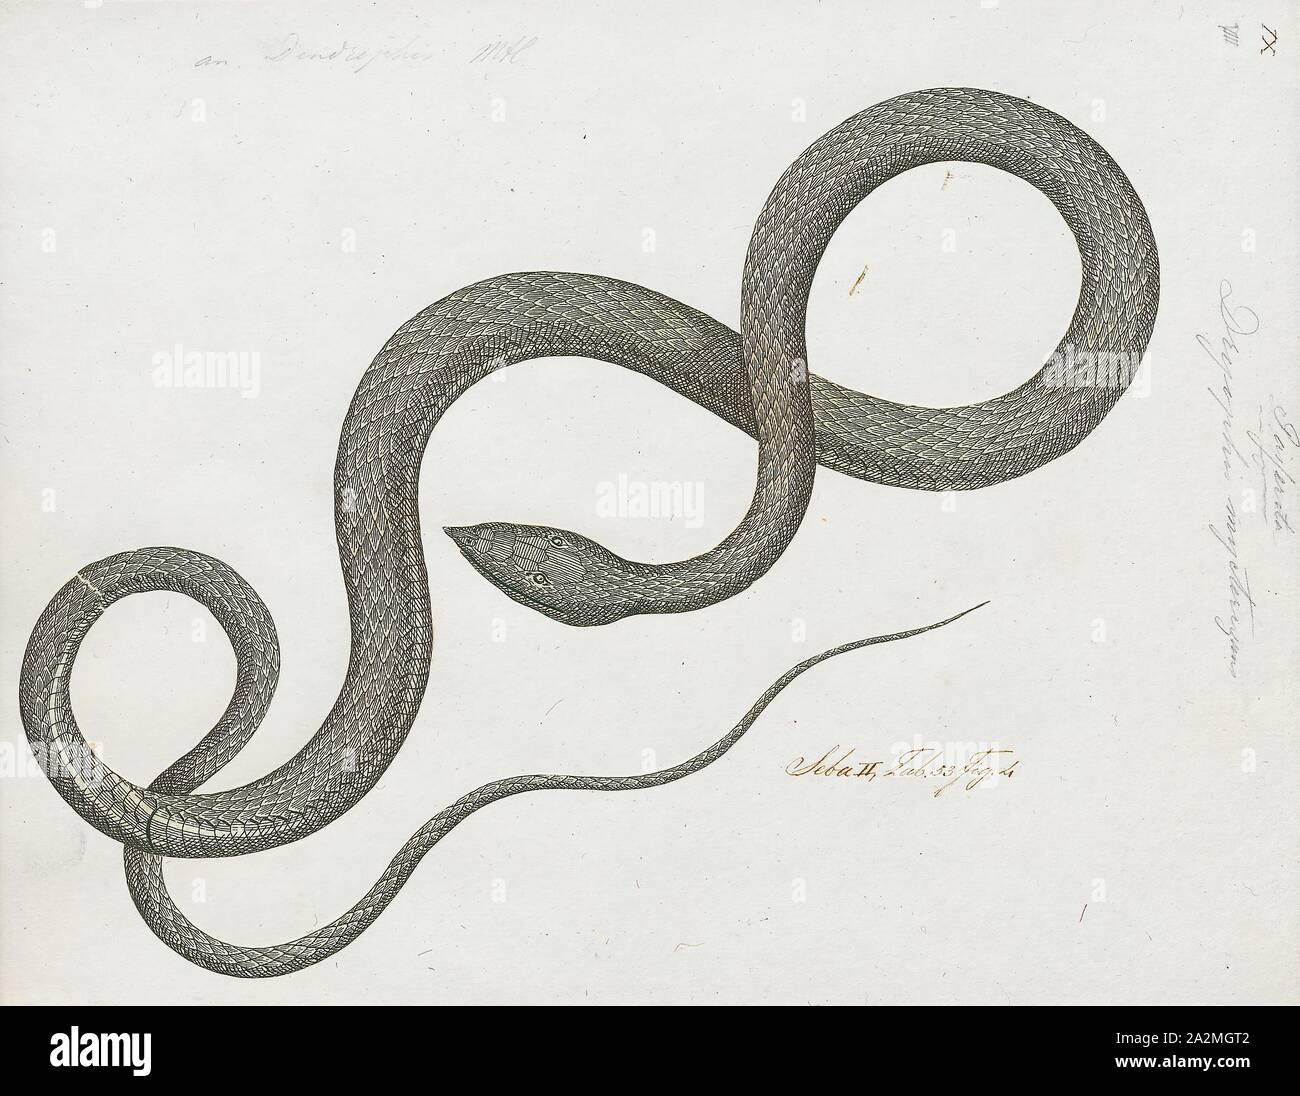 Dryophis mycterizans, Drucken, Ahaetulla nasuta, auch als gemeinsame Weinstock Schlange bekannt und Spitzzange peitsche Schlange, ist eine schlanke Green tree snake in Indien, Sri Lanka, Bangladesch, Burma, Thailand, Kambodscha und Vietnam., 1734-1765 gefunden Stockfoto